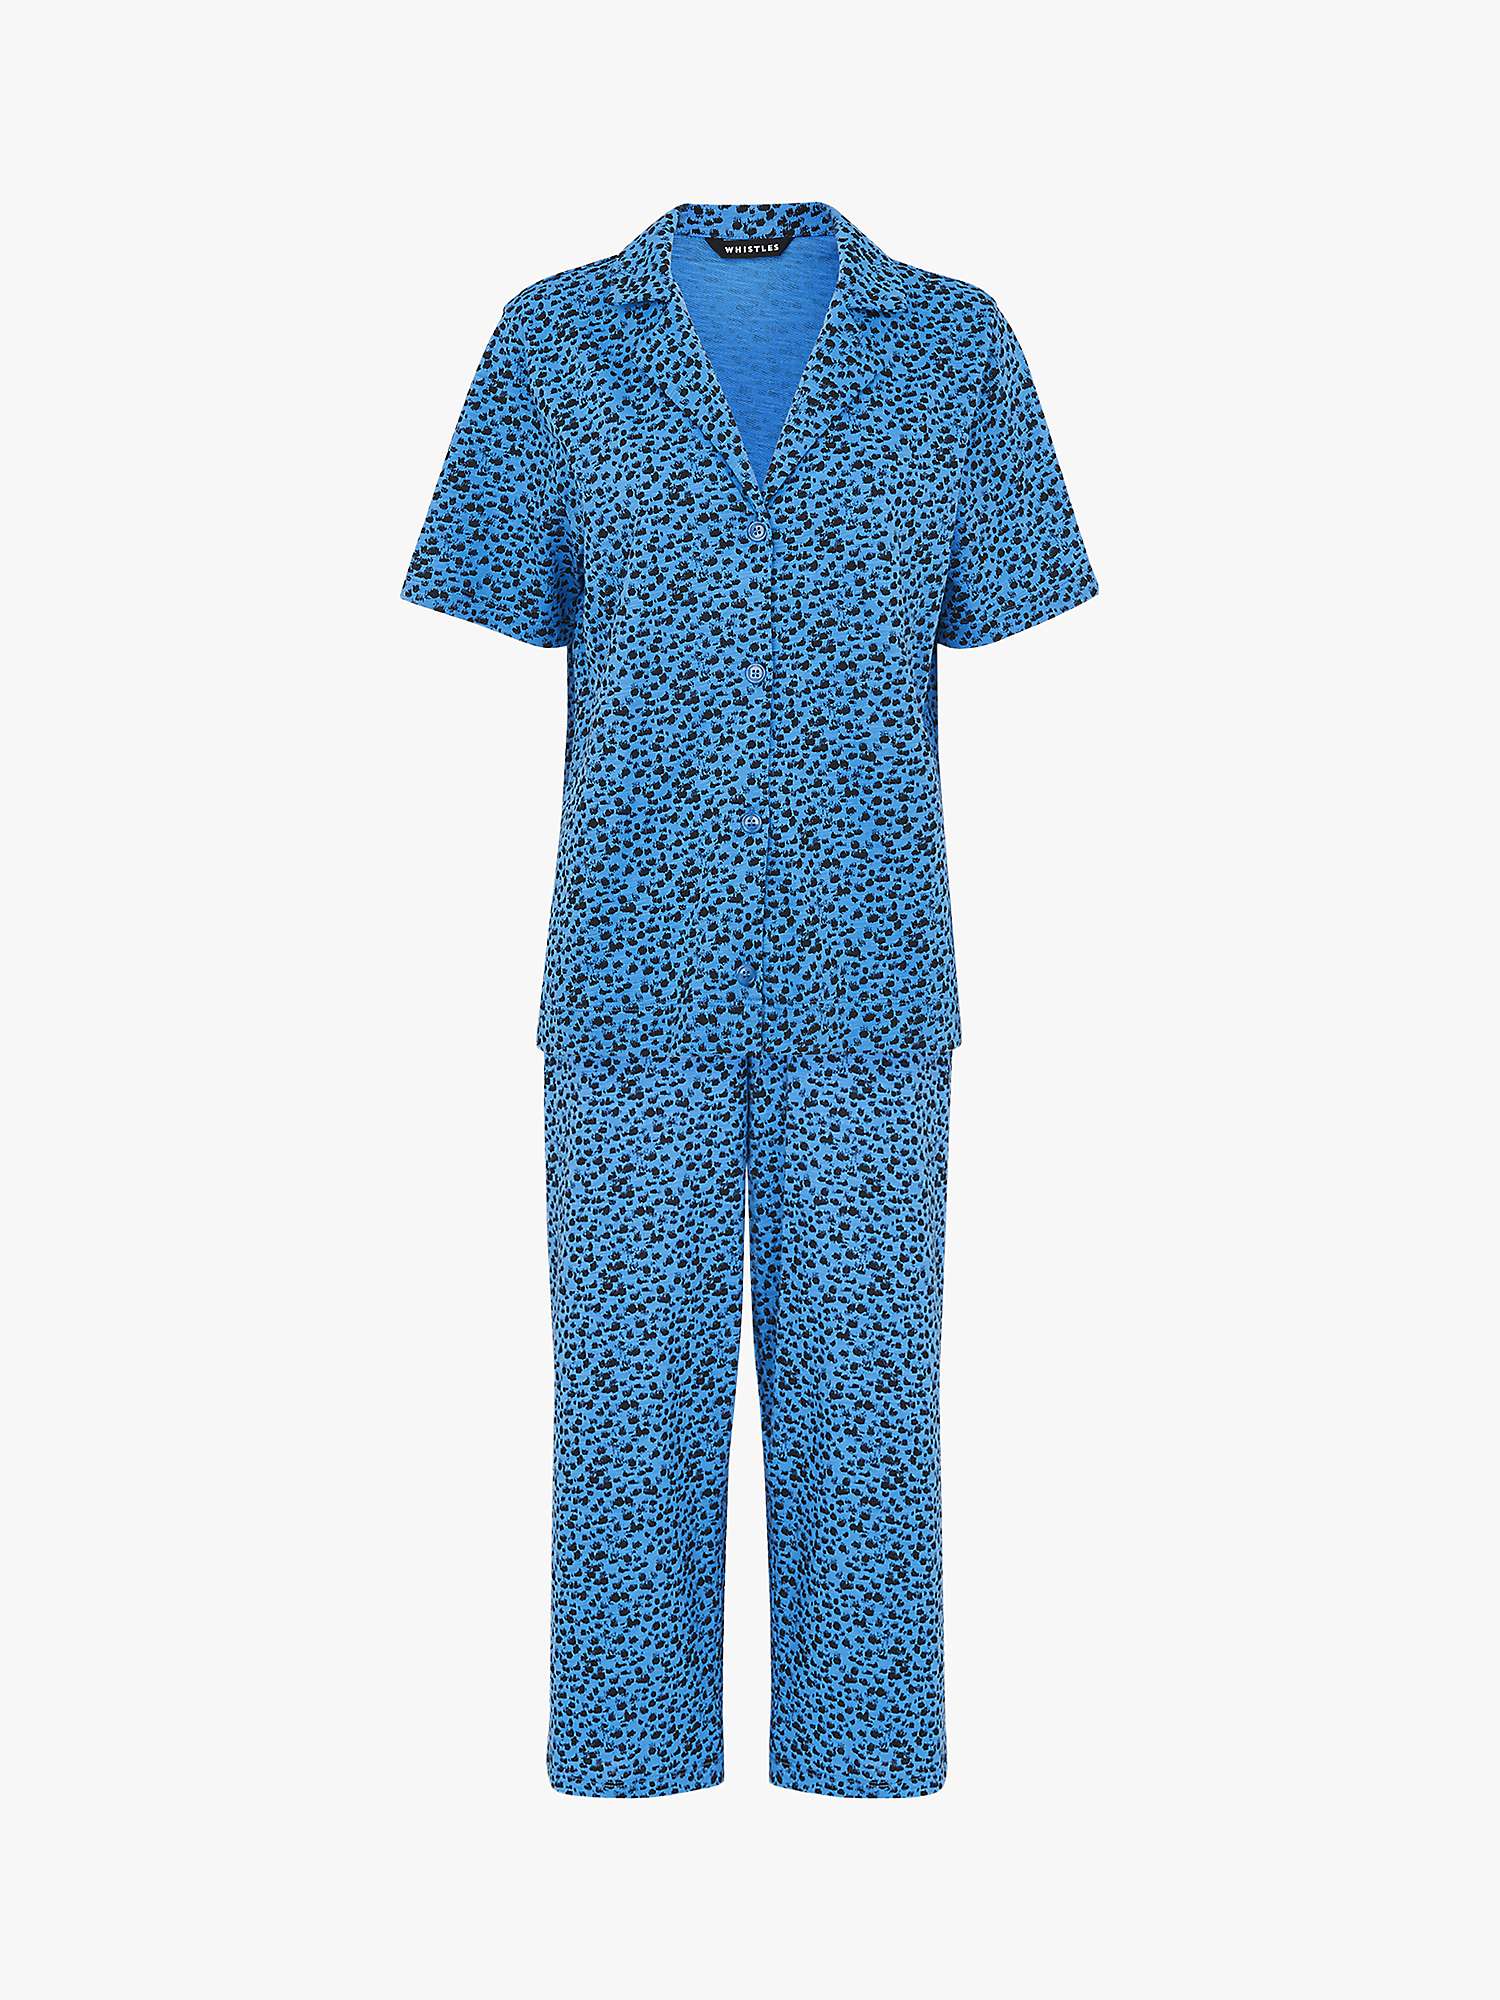 Whistles Brushmark Animal Print Pyjamas, Blue/Multi at John Lewis ...